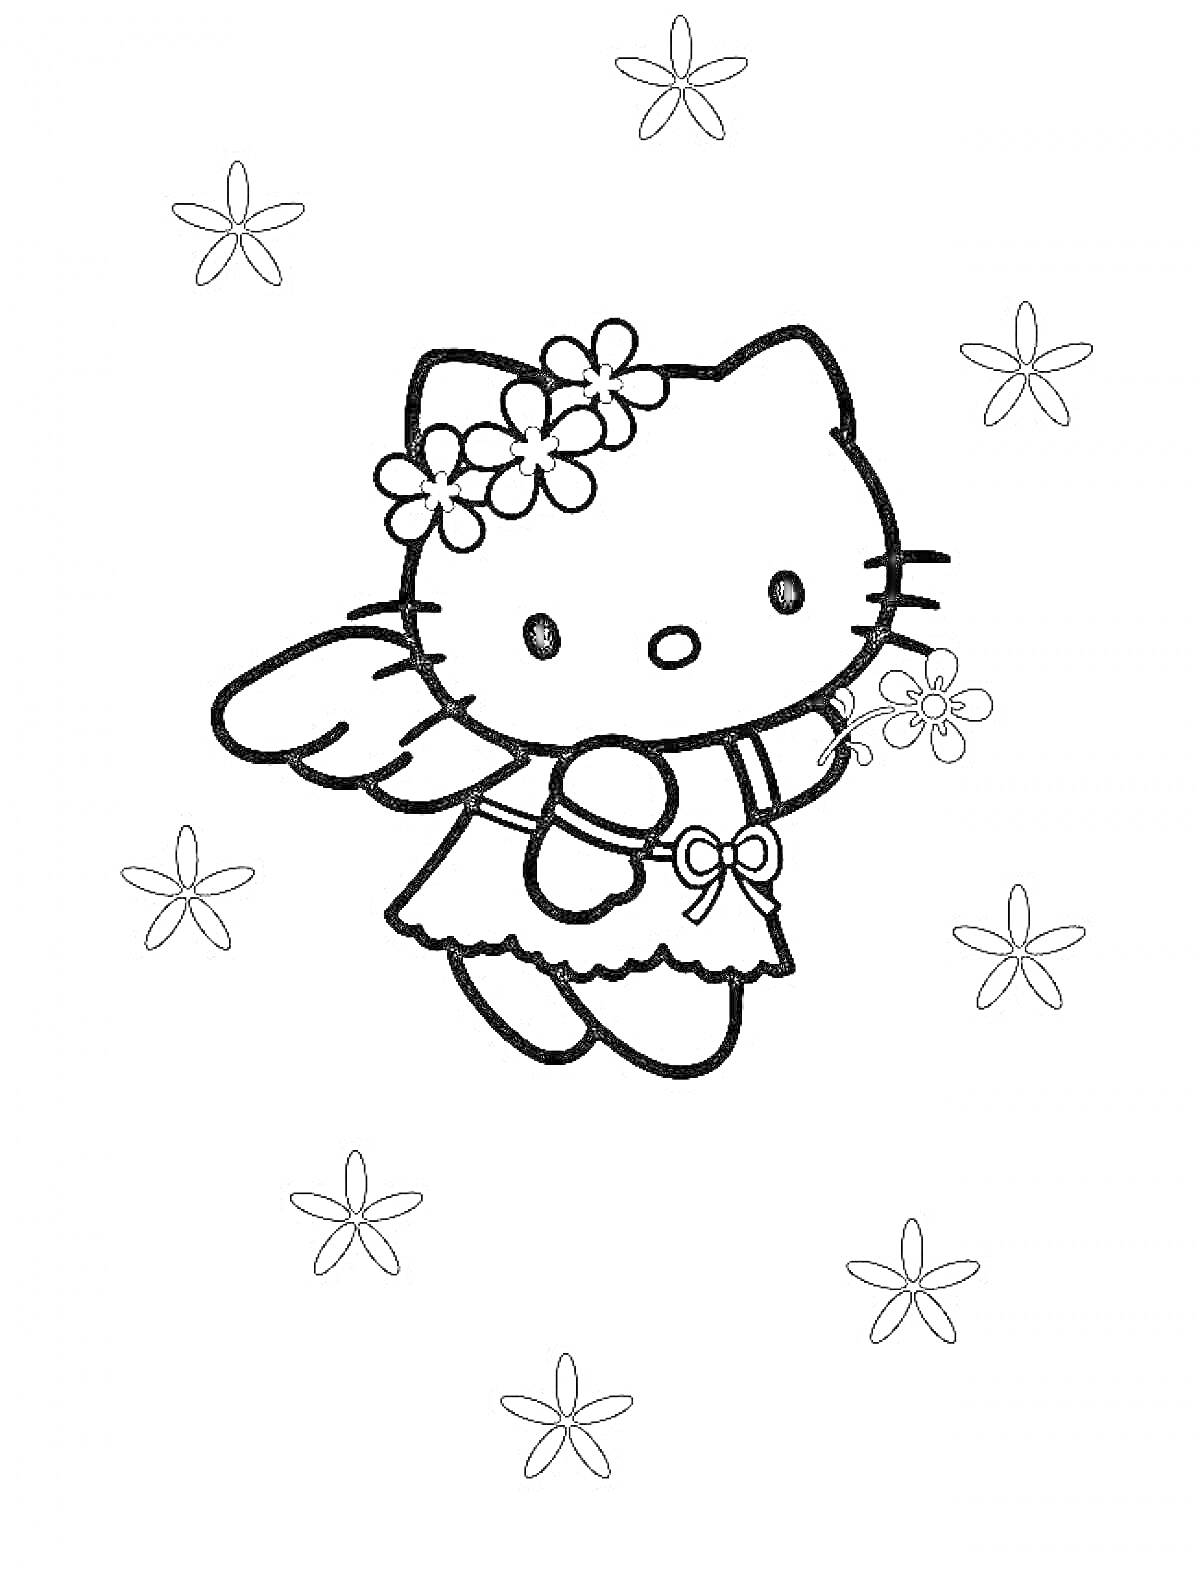 Hello Kitty с цветами в волосах, крыльями и цветочной повязкой окружена цветами.